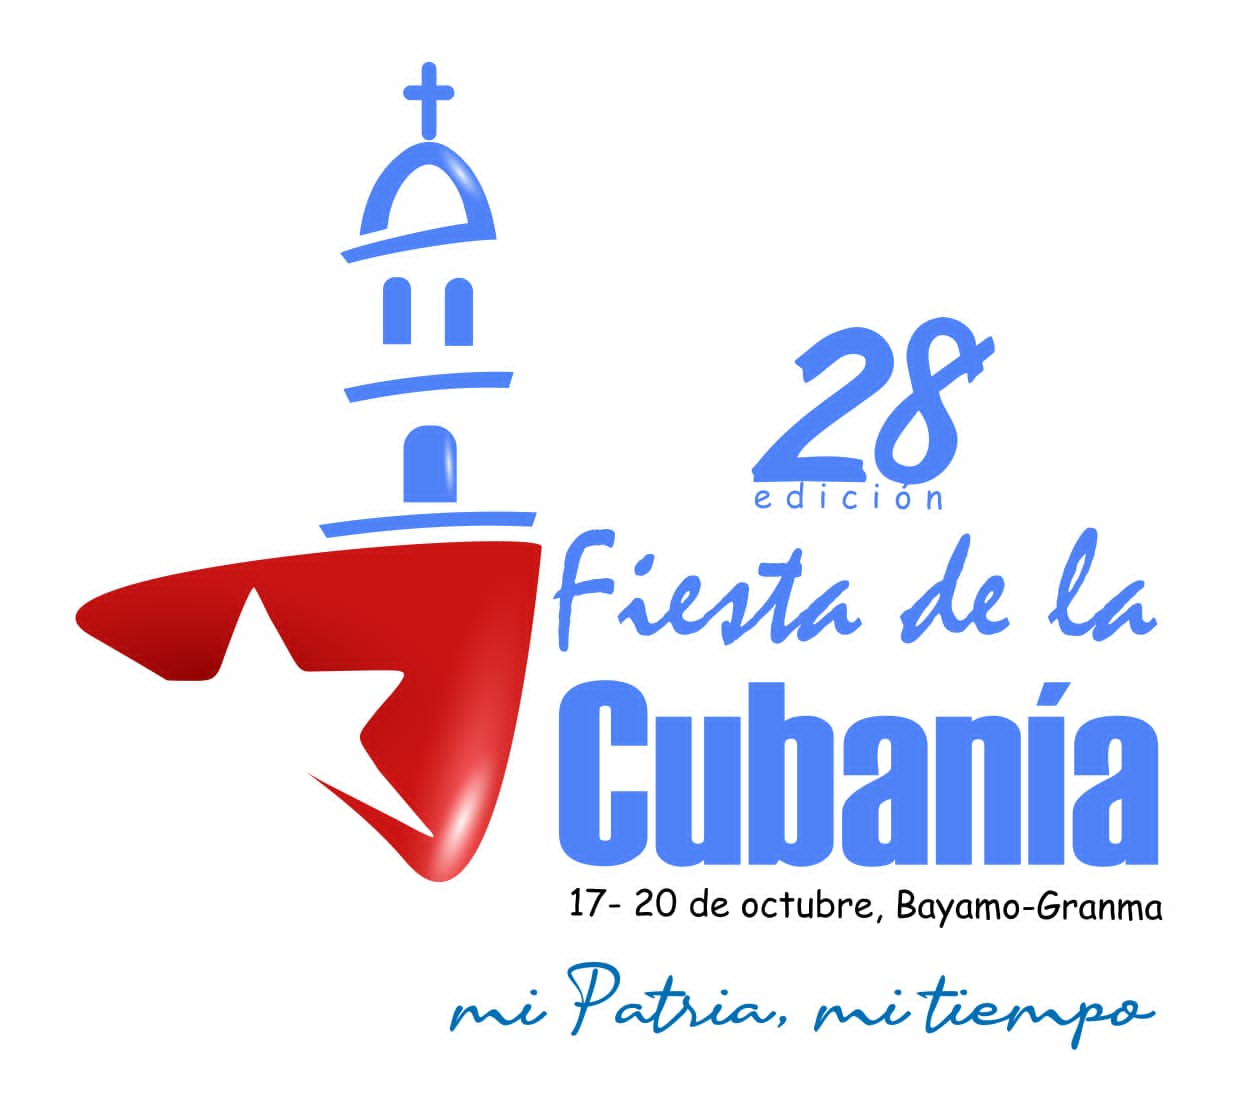 Fiesta de Cubanía tiene identidad visual